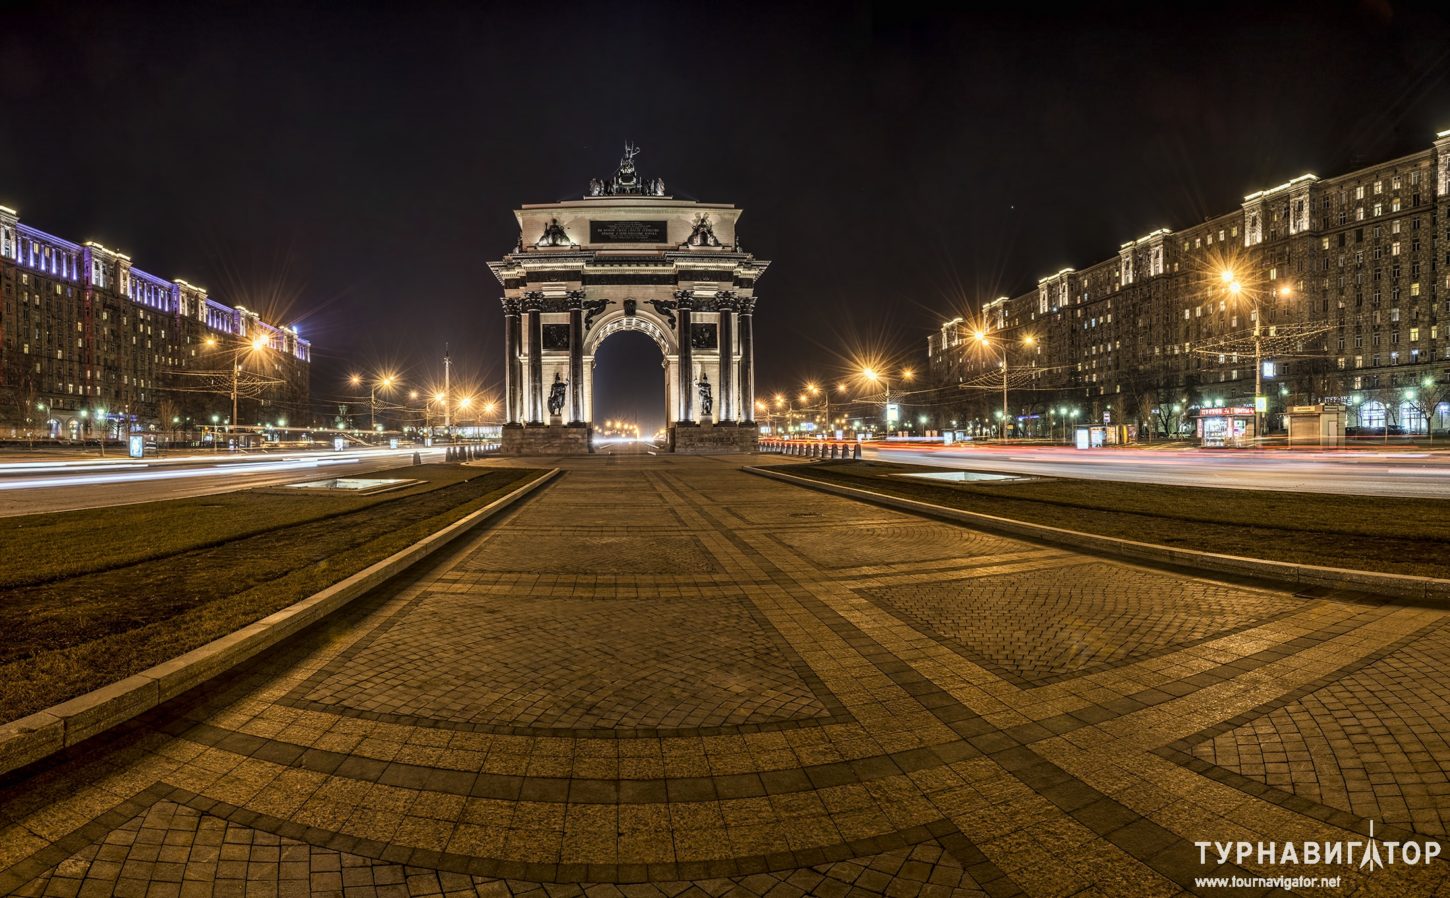 Триумфальная арка на Кутузовском проспекте в Москве: история, архитектура, фунциональность